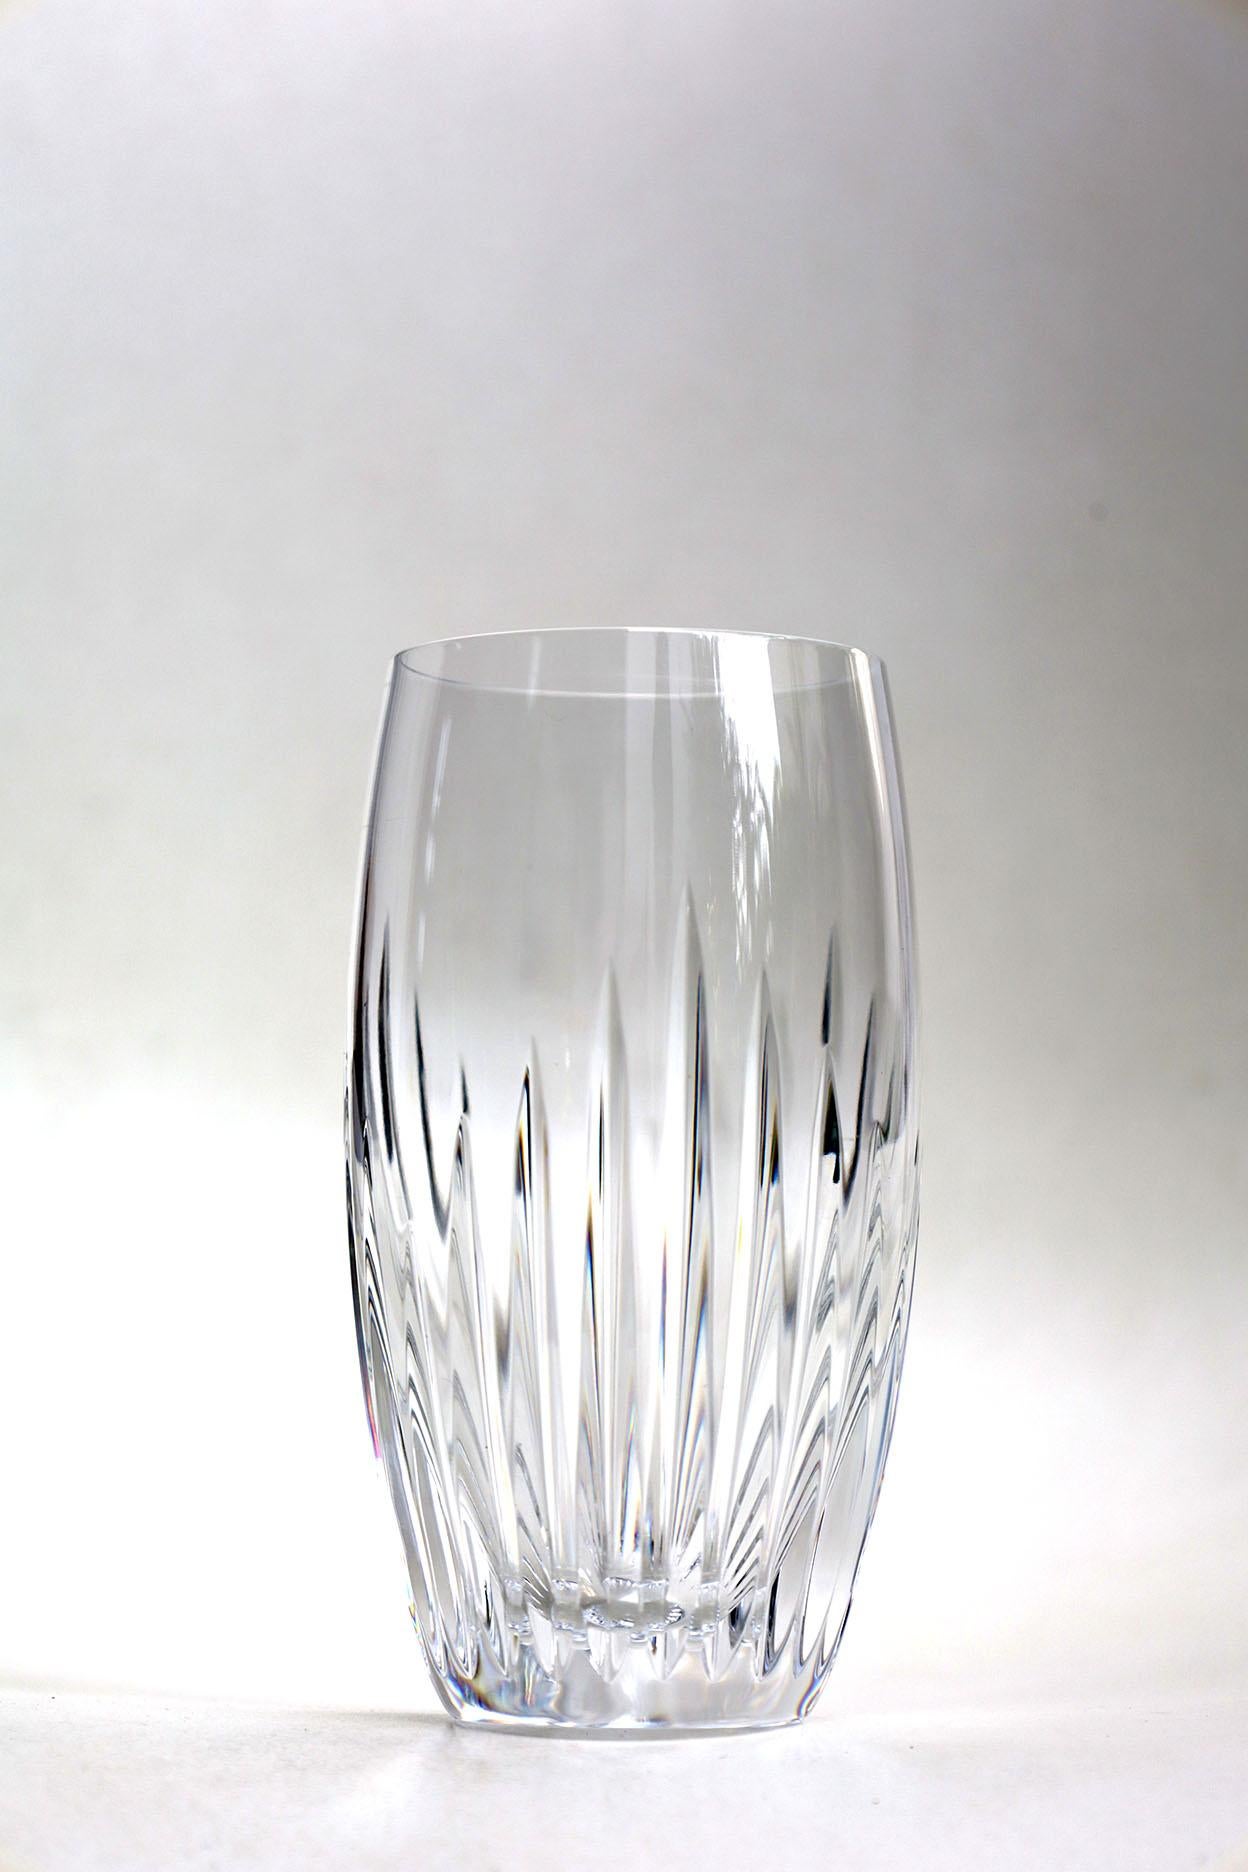 Die komplizierten Details verleihen dem Massena-Glas ein beeindruckendes Gewicht, als wäre es ein moderner Kelch. Die ausgefeilte Silhouette und die prismatischen Eigenschaften machen ihn zu einem würdigen Begleiter für jeden festlichen Anlass oder